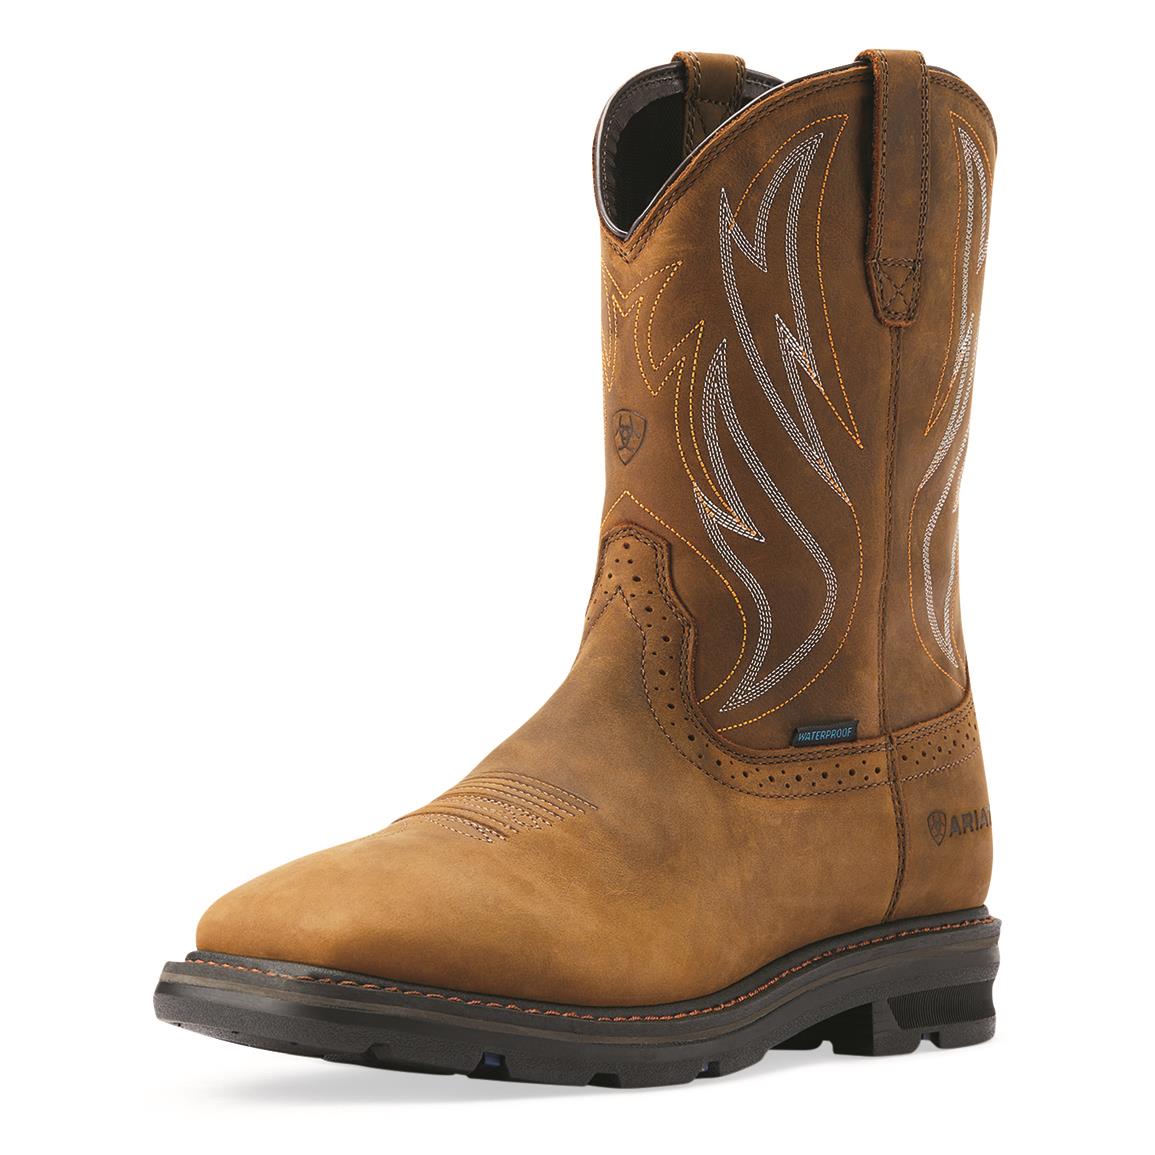 Ariat Men's Sierra Shock Shield H20 Waterproof Work Boots, Distressed Brown